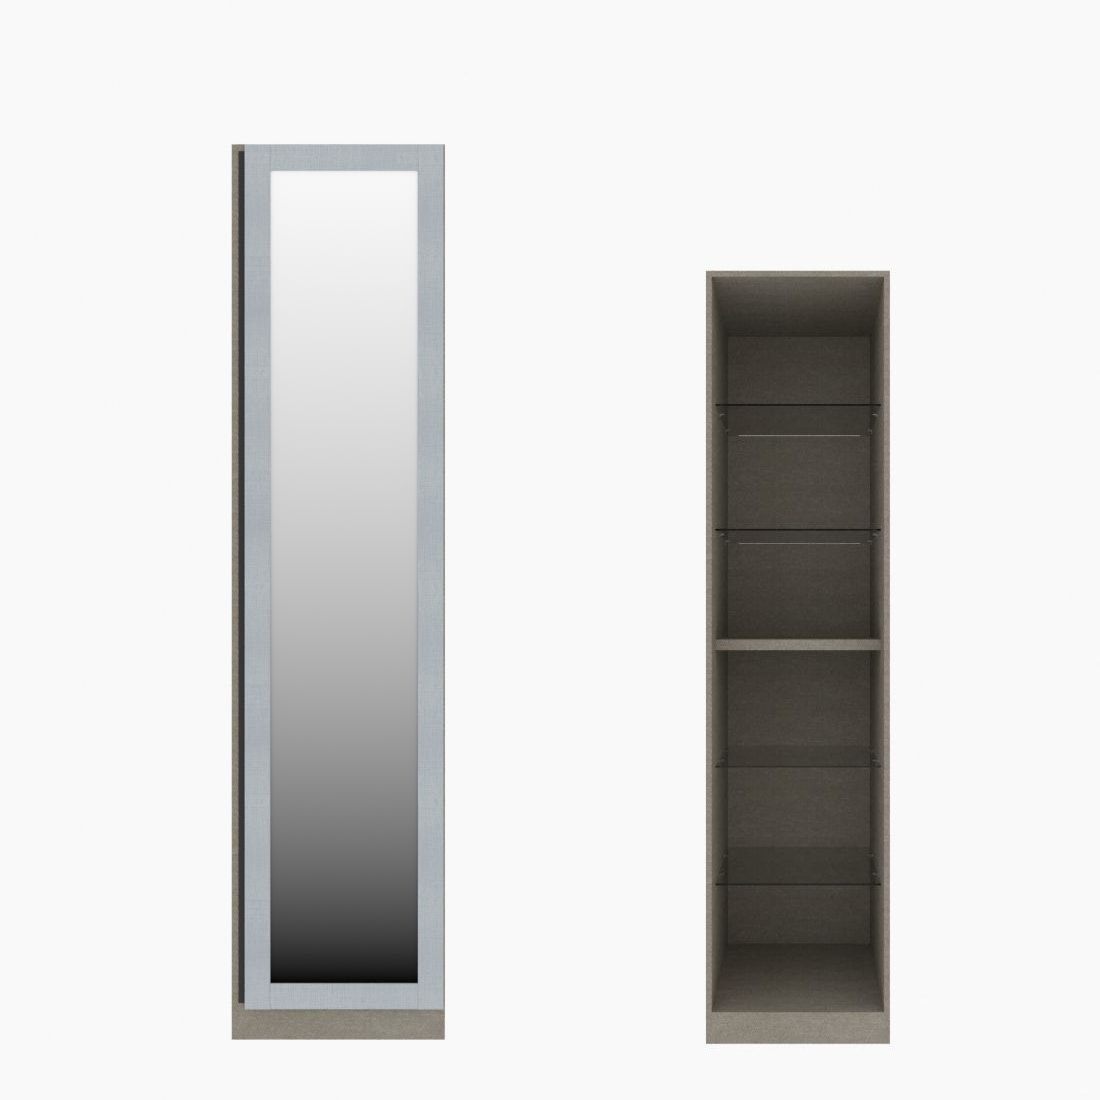 ตู้เสื้อผ้า ตู้โชว์ชั้นกระจก OP-H (หน้าบานเปิดขวา) ขนาด 50 ซม. รุ่น Blox สีขาวลายผ้า&กระจกเงา01